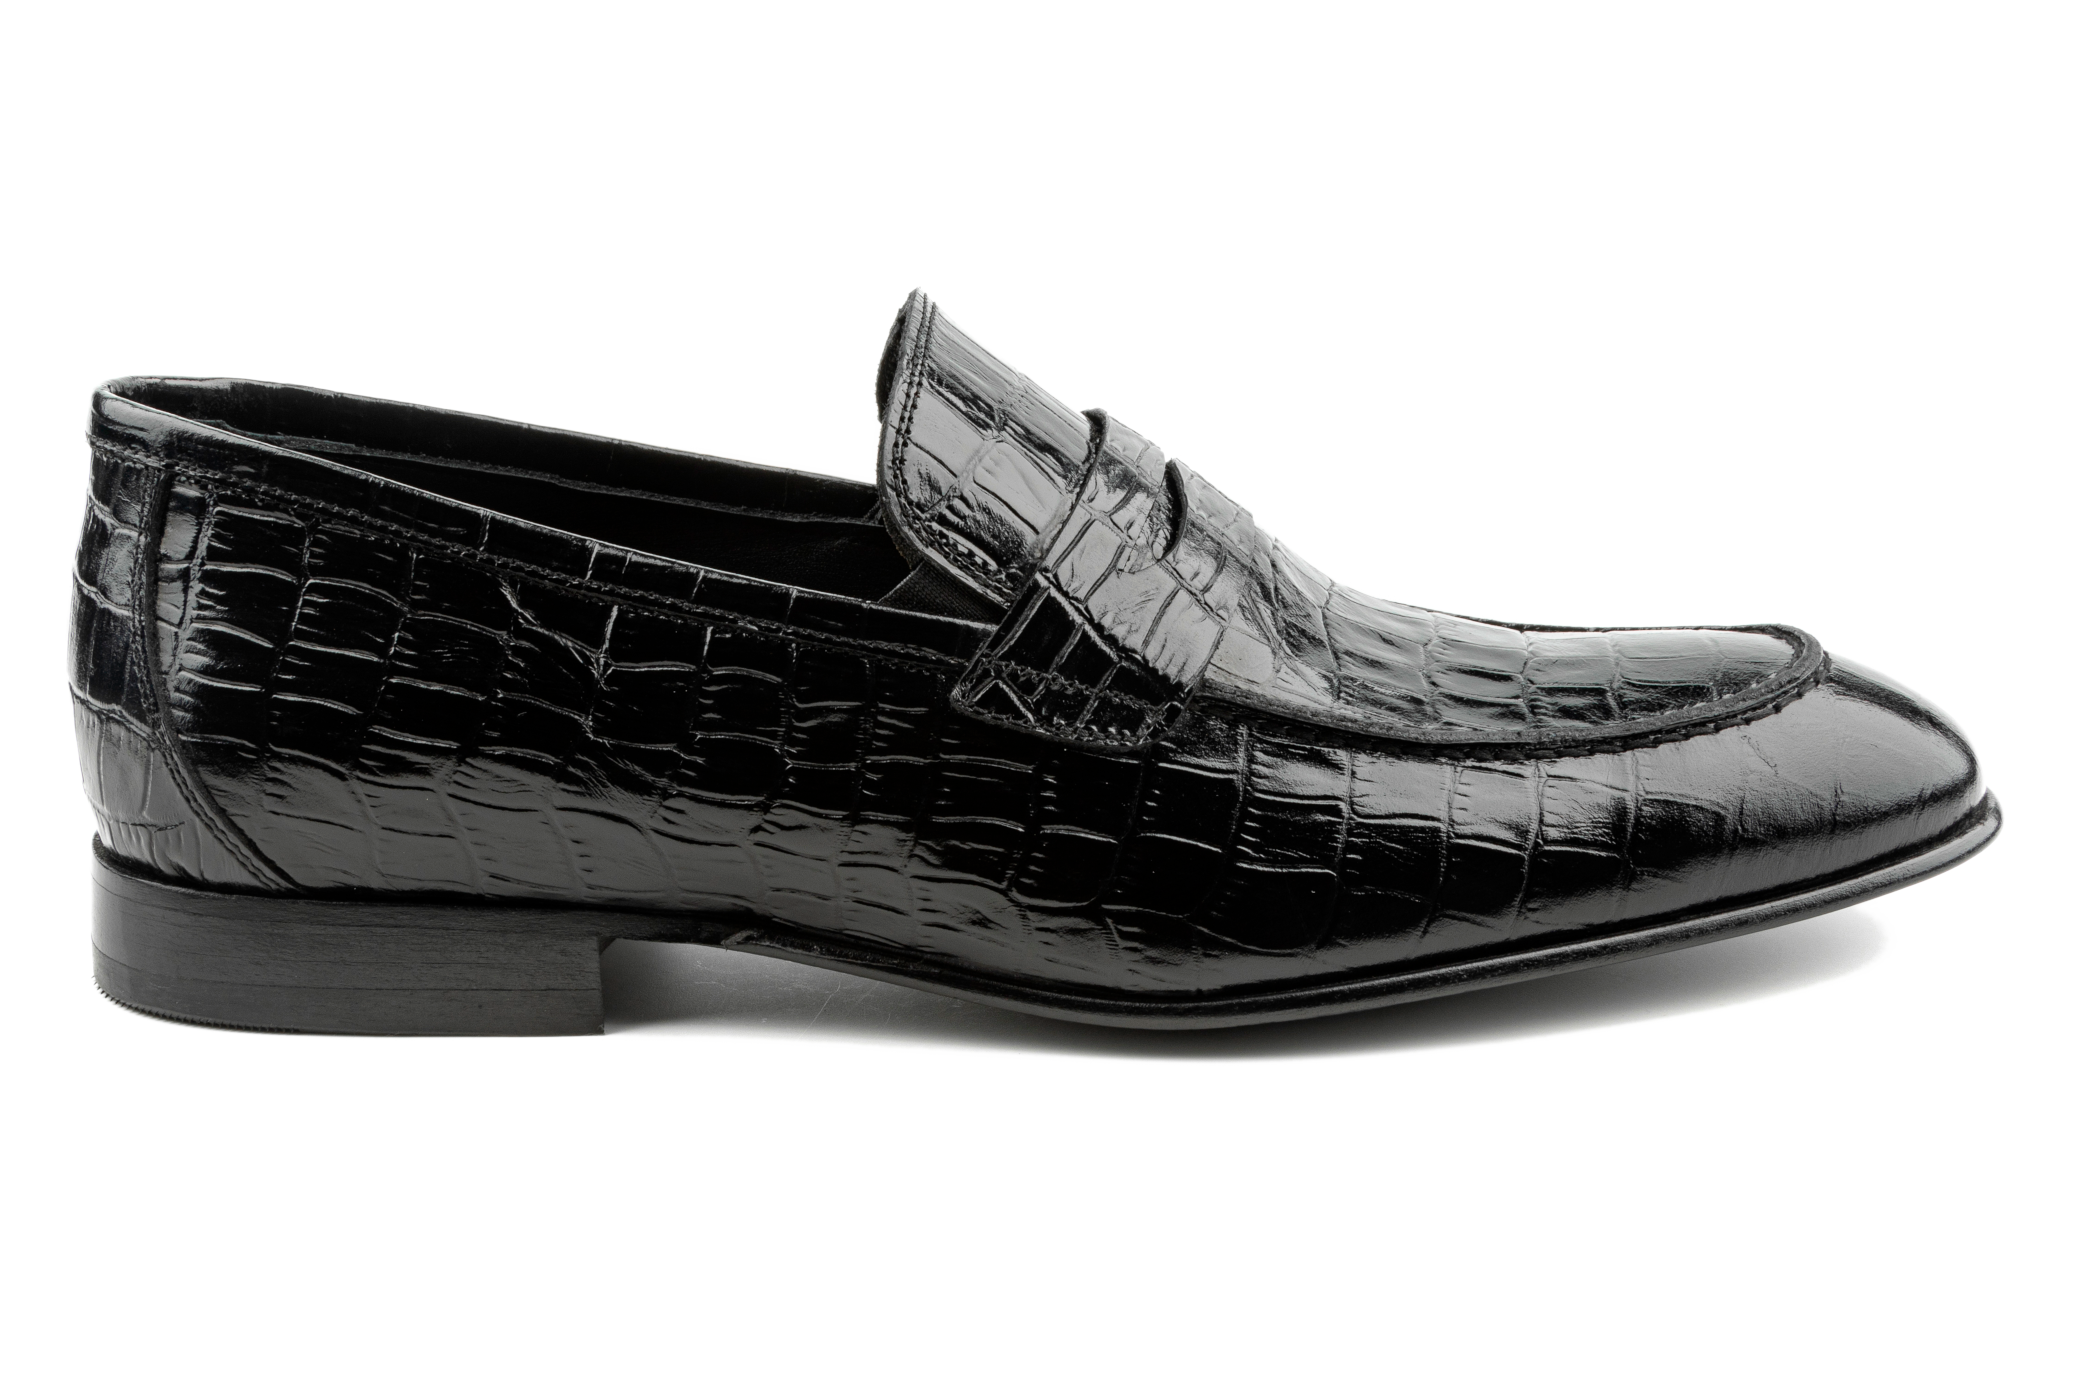 Handmade Black Crocodile Embossed Calfskin Leather Moccasins Loafer Shoes 4  Men